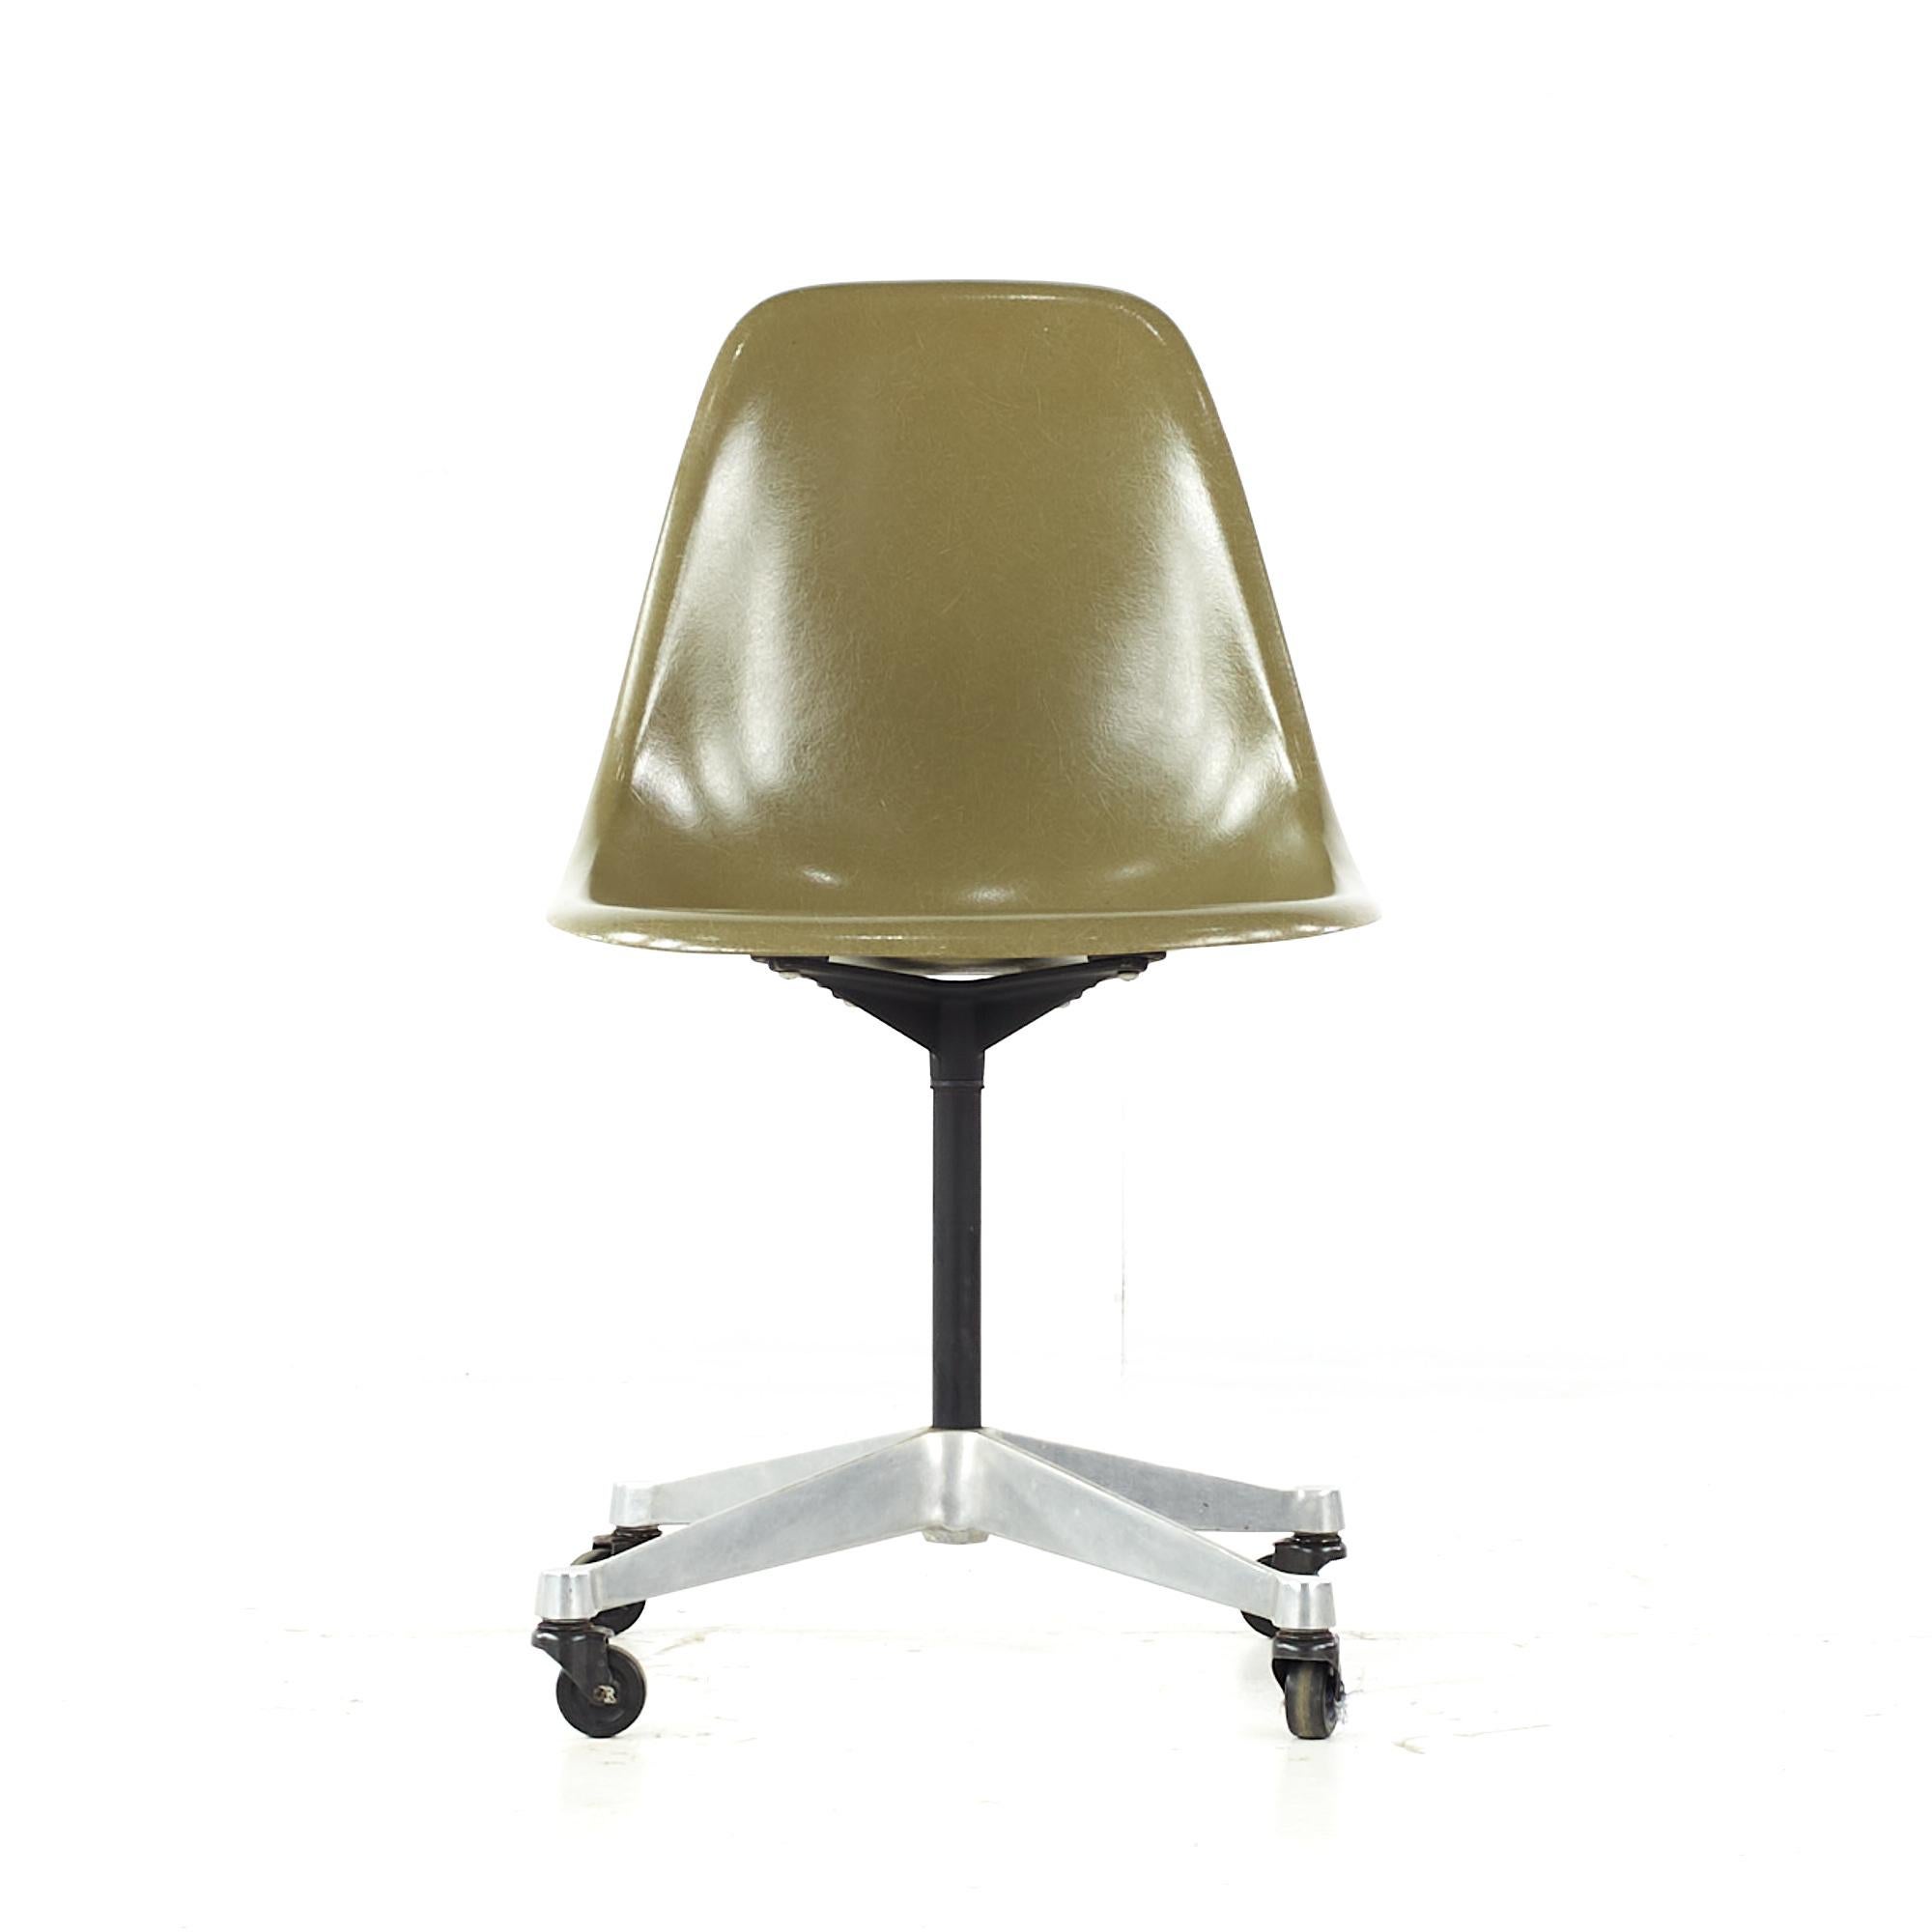 Charles und Ray Eames für Herman Miller Mid Century Wheeled Shell Chair

Dieser Stuhl misst: 18,5 breit x 24 tief x 32 hoch, mit einer Sitzhöhe von 17,5 Zoll

Alle Möbelstücke sind in einem so genannten restaurierten Vintage-Zustand zu haben. Das